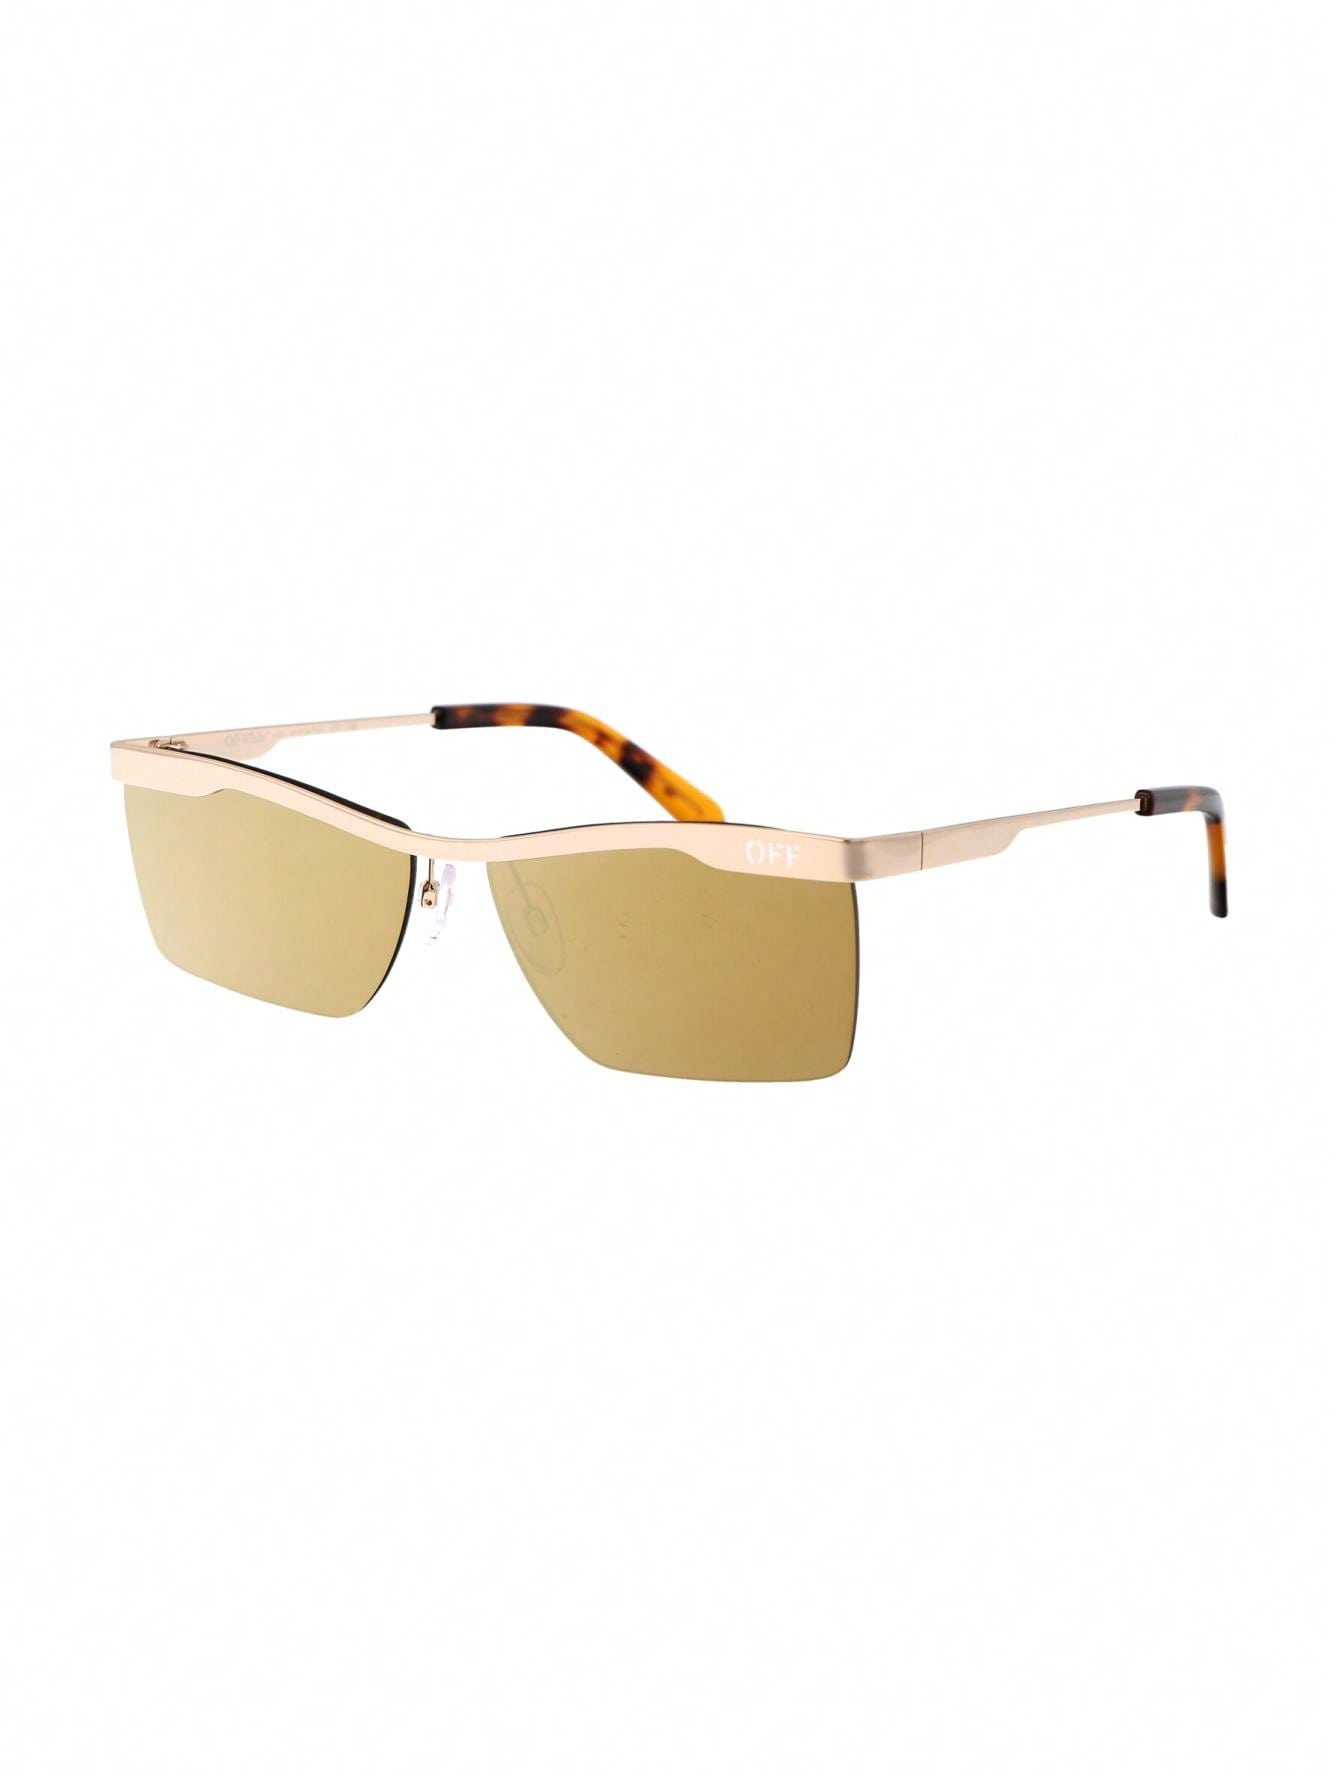 Мужские солнцезащитные очки Off-White КОРИЧНЕВЫЕ OERI095F23MET0017676, коричневый цена и фото